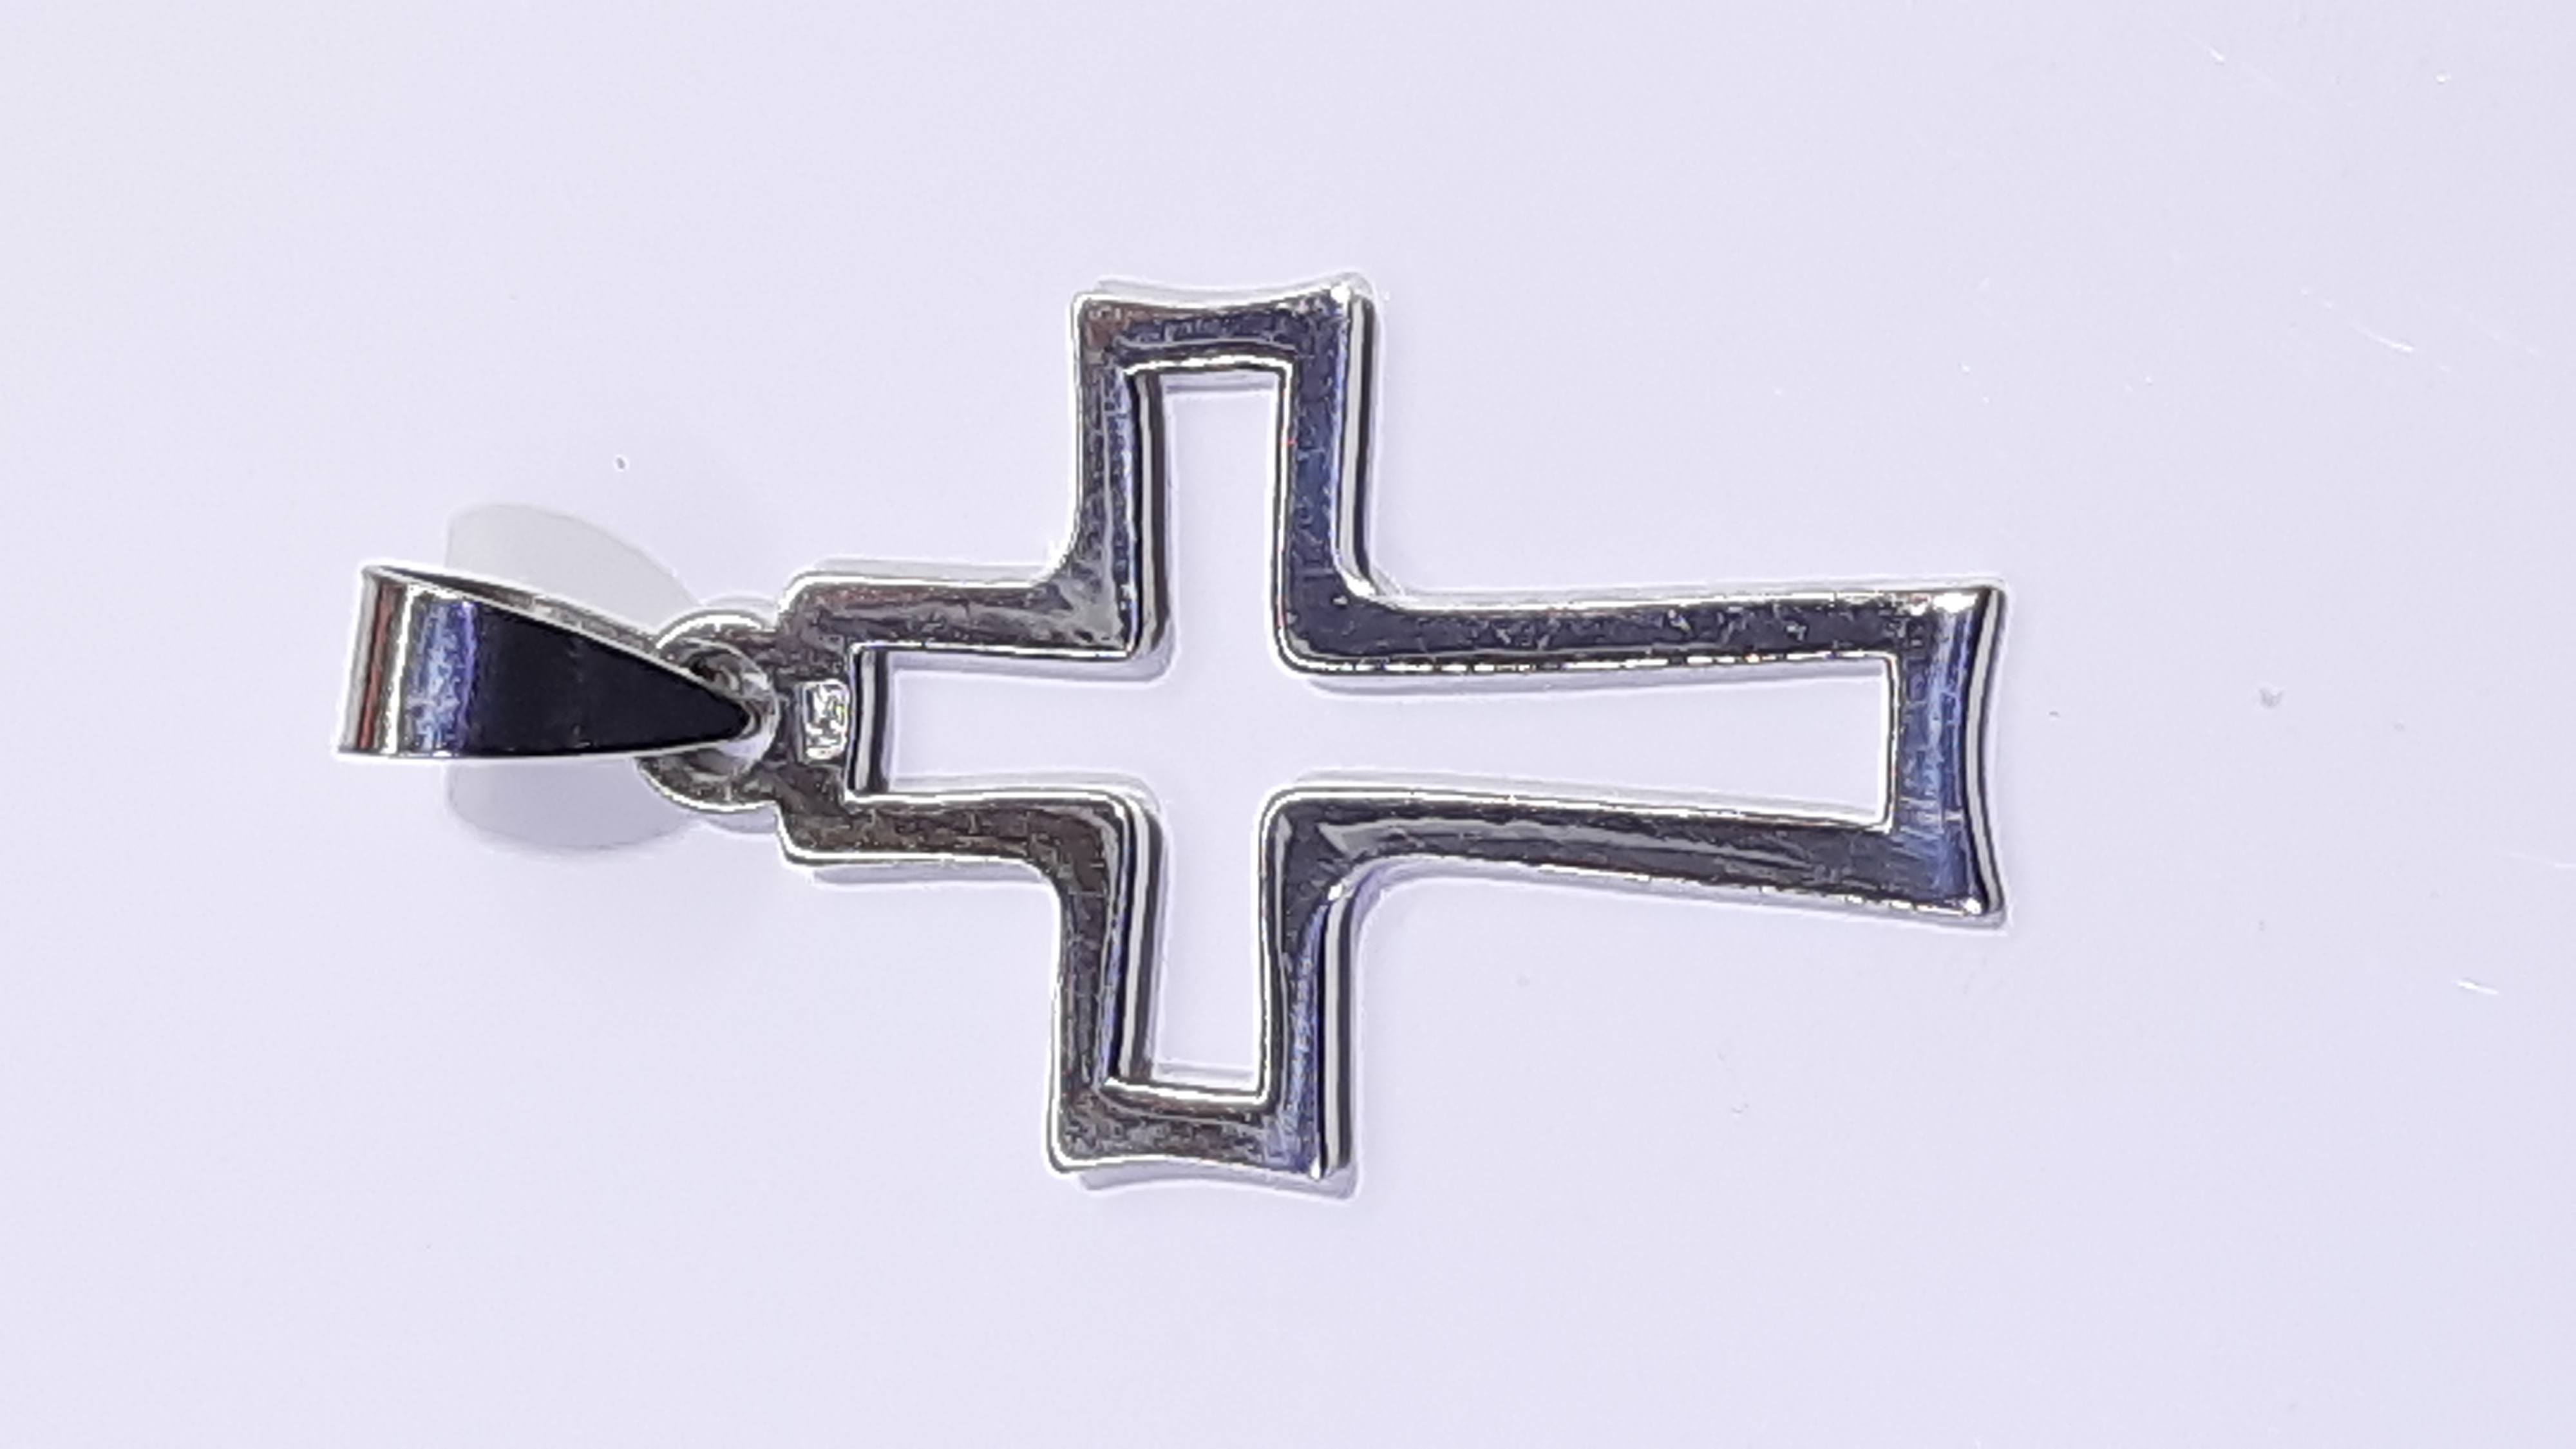 Stříbrný přívěsek - kříž